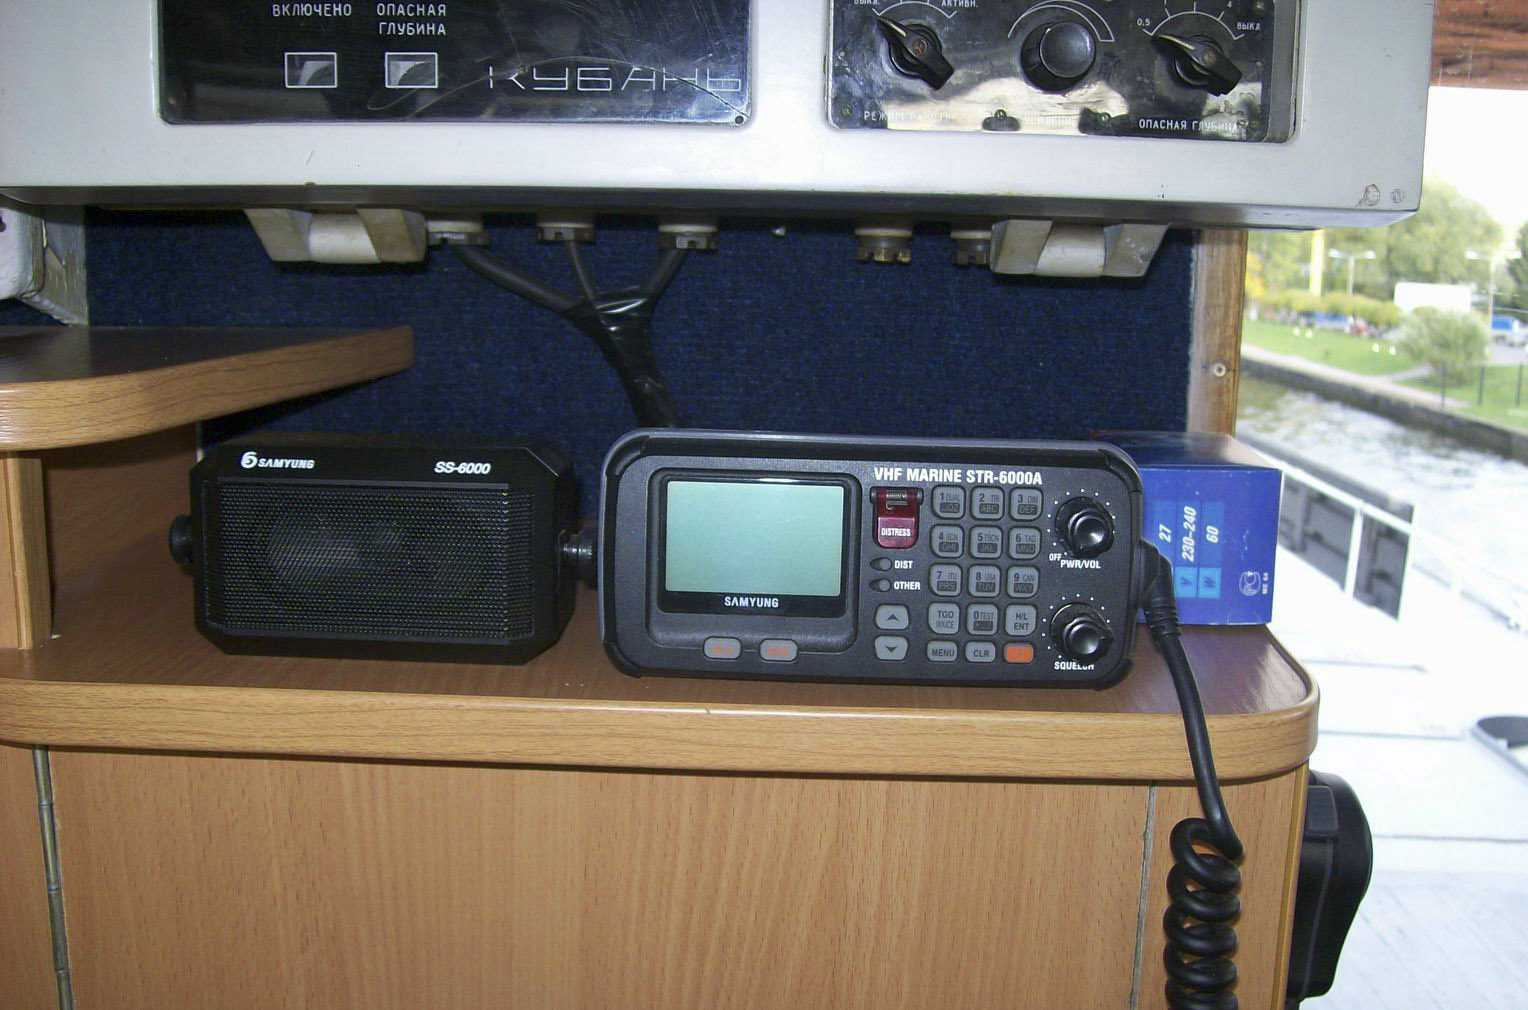 Укв на судах. УКВ SAMYUNG Str-6000a. Морская радиостанция SAMYUNG Str – 6000 a. Str 6000a УКВ радиоустановка. Str-6000a.